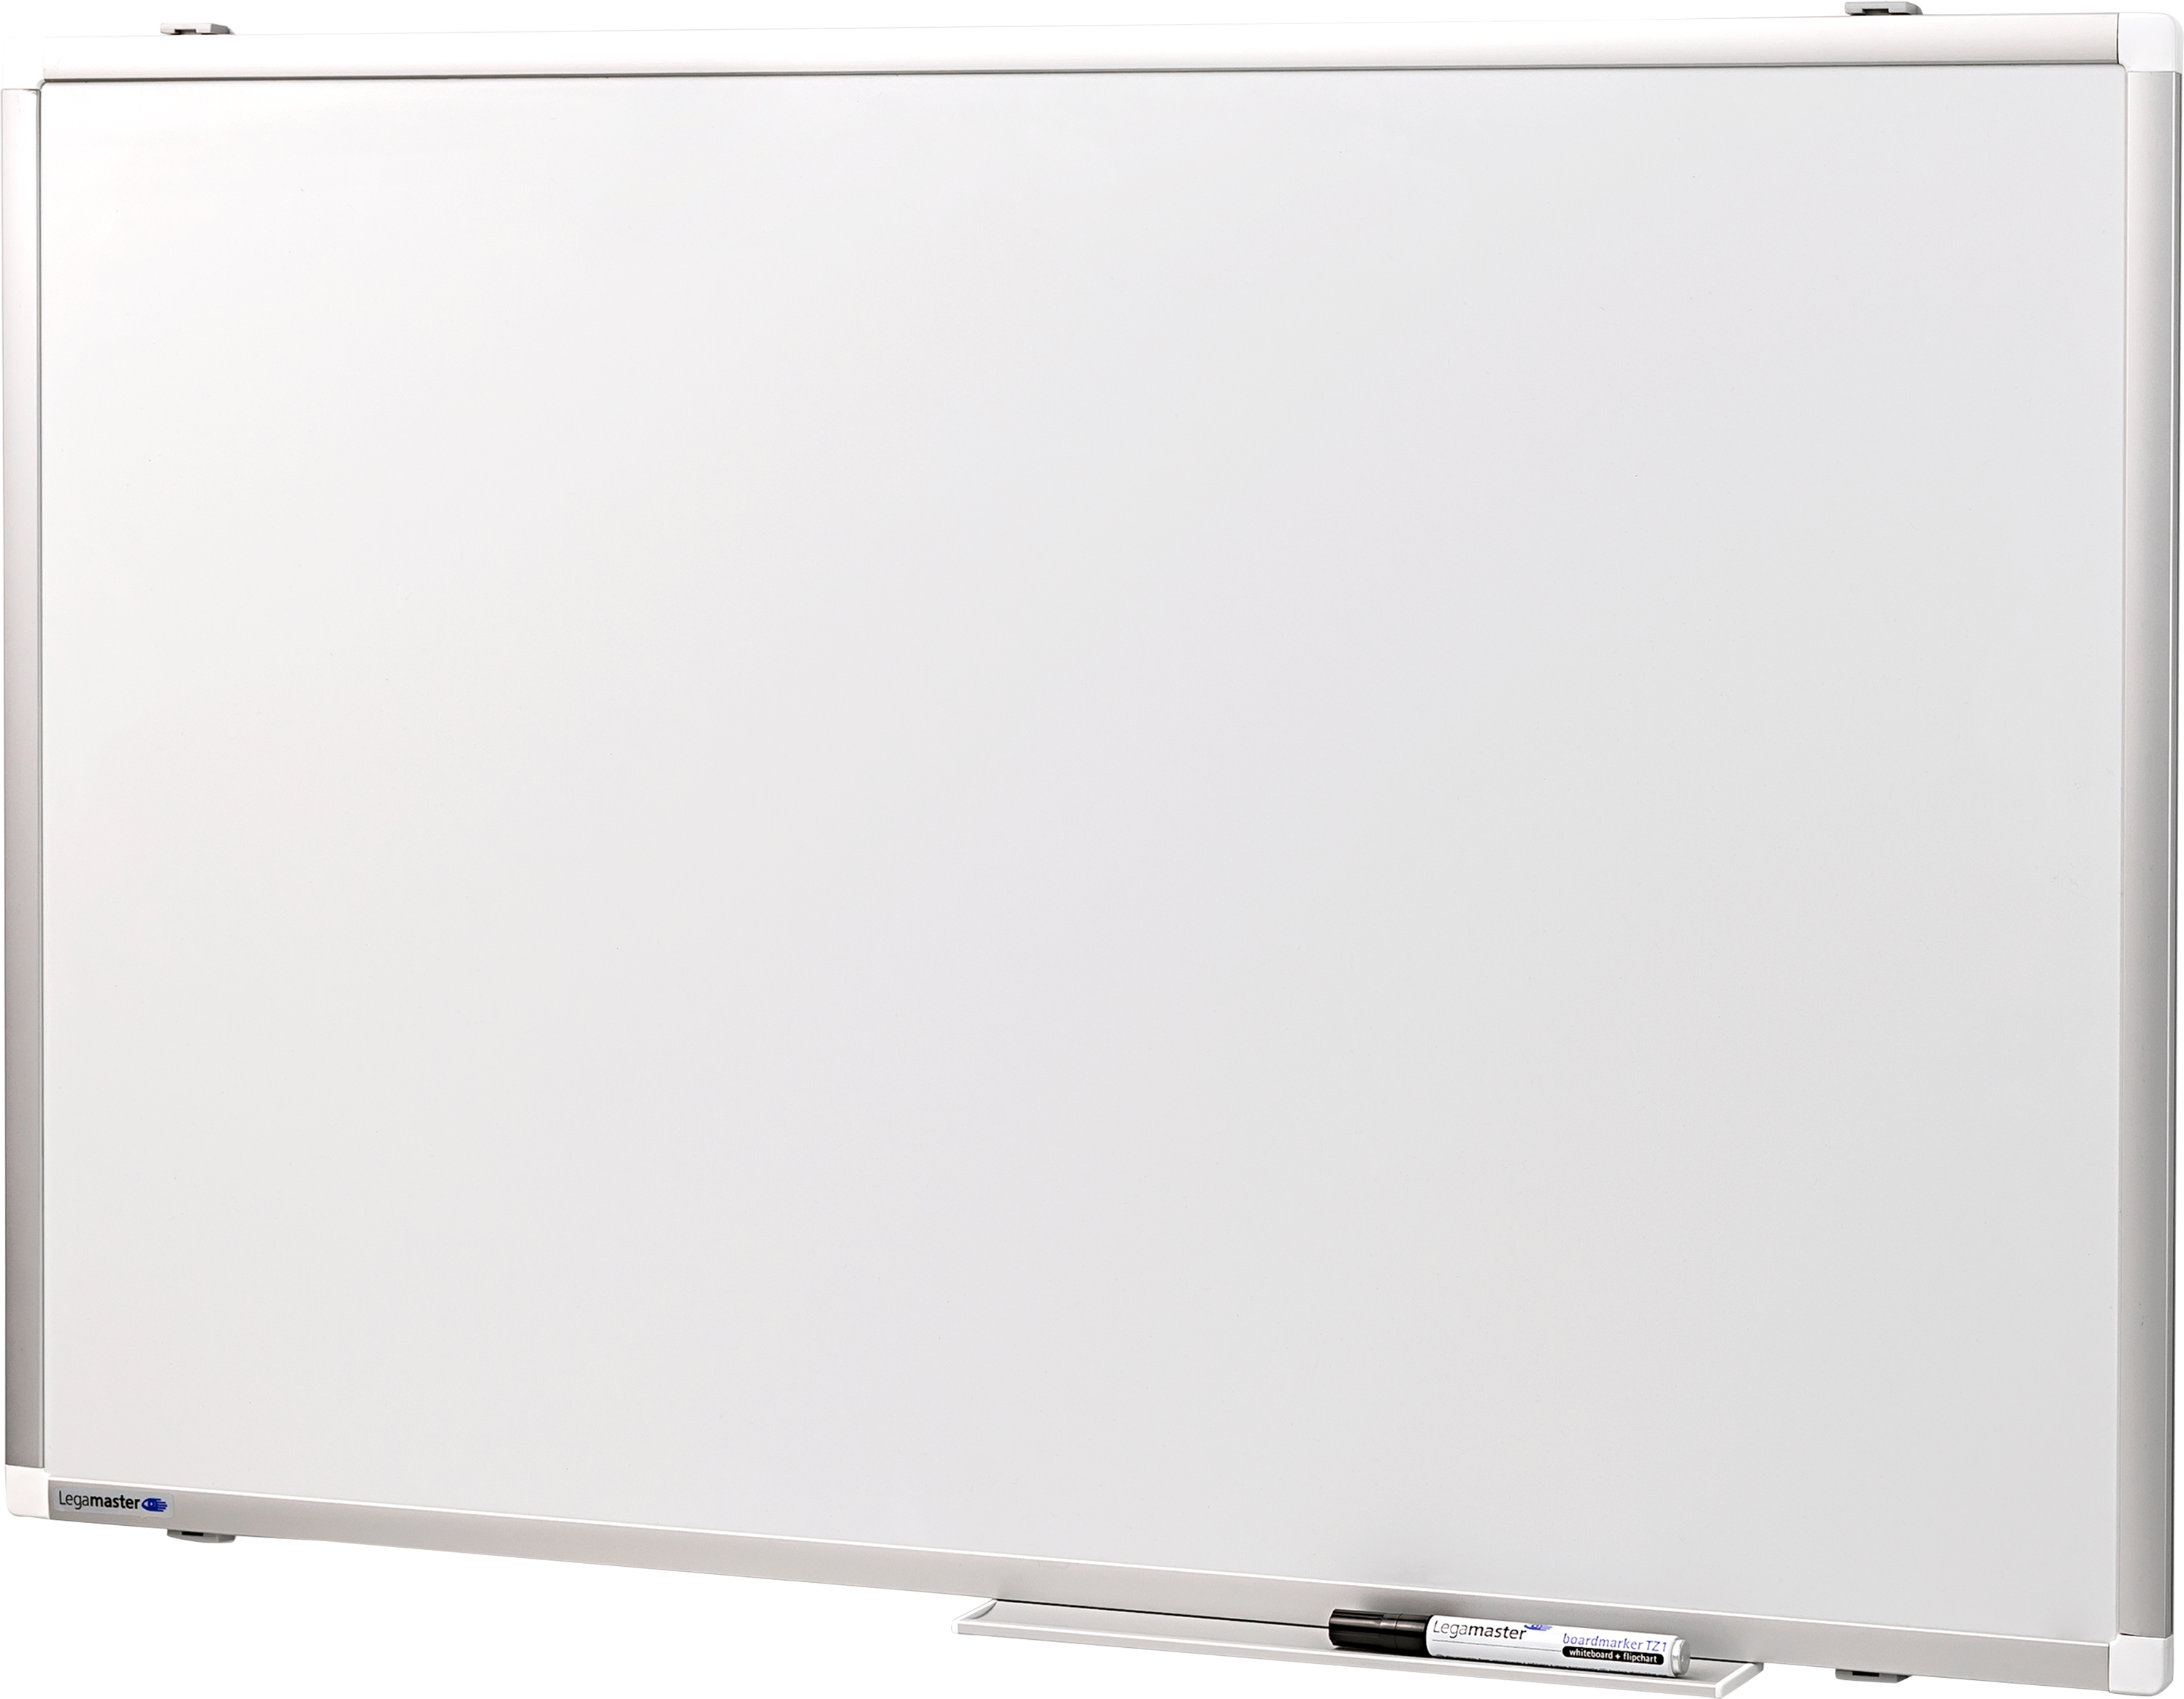 LEGAMASTER Whiteboard Premium Plus 7-101043 60x90cm 60x90cm